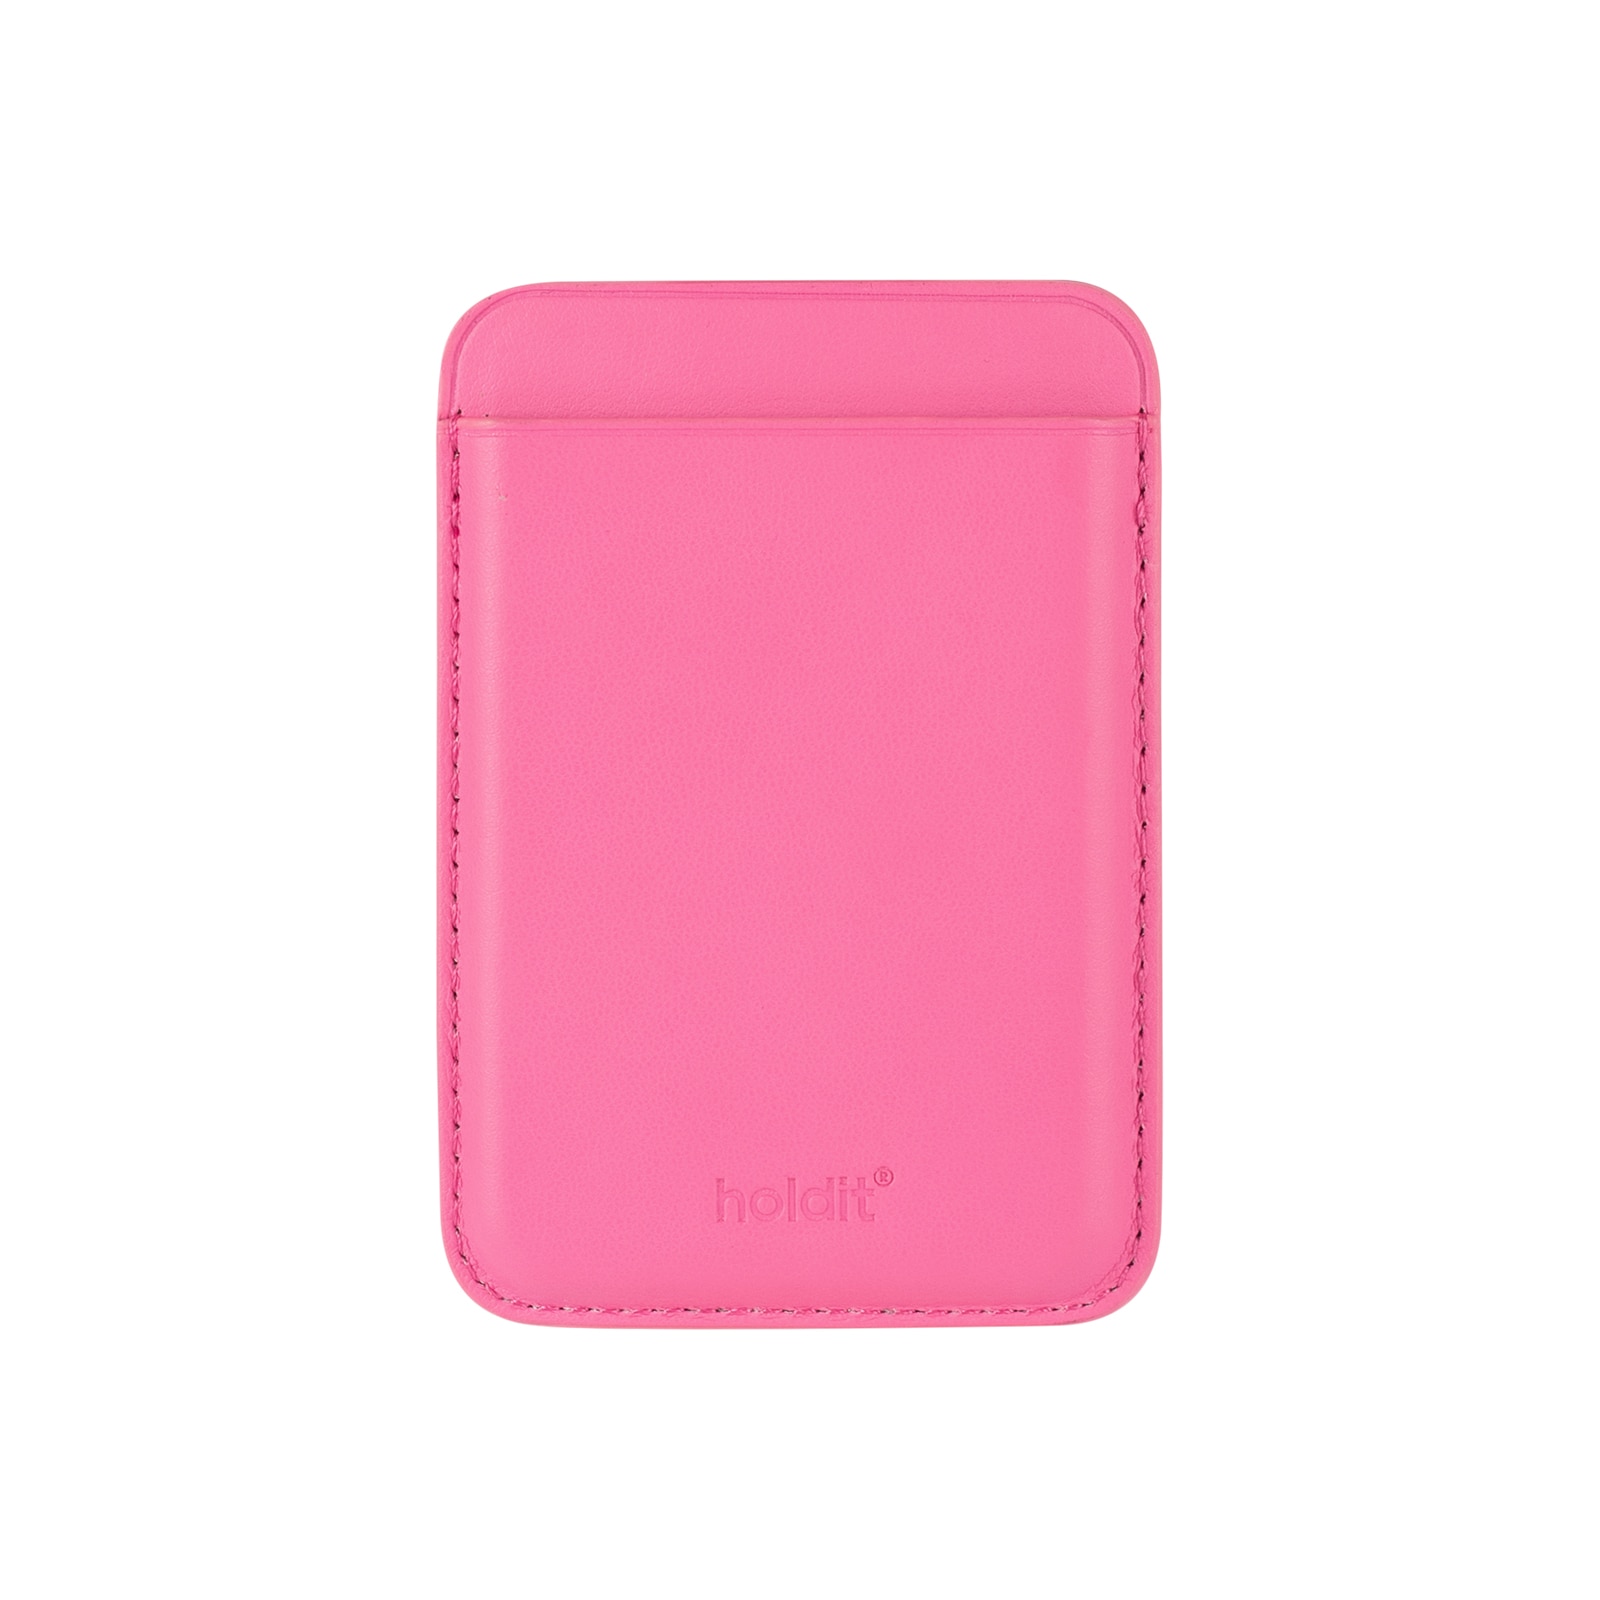 Titular de la tarjeta magnética Bright Pink